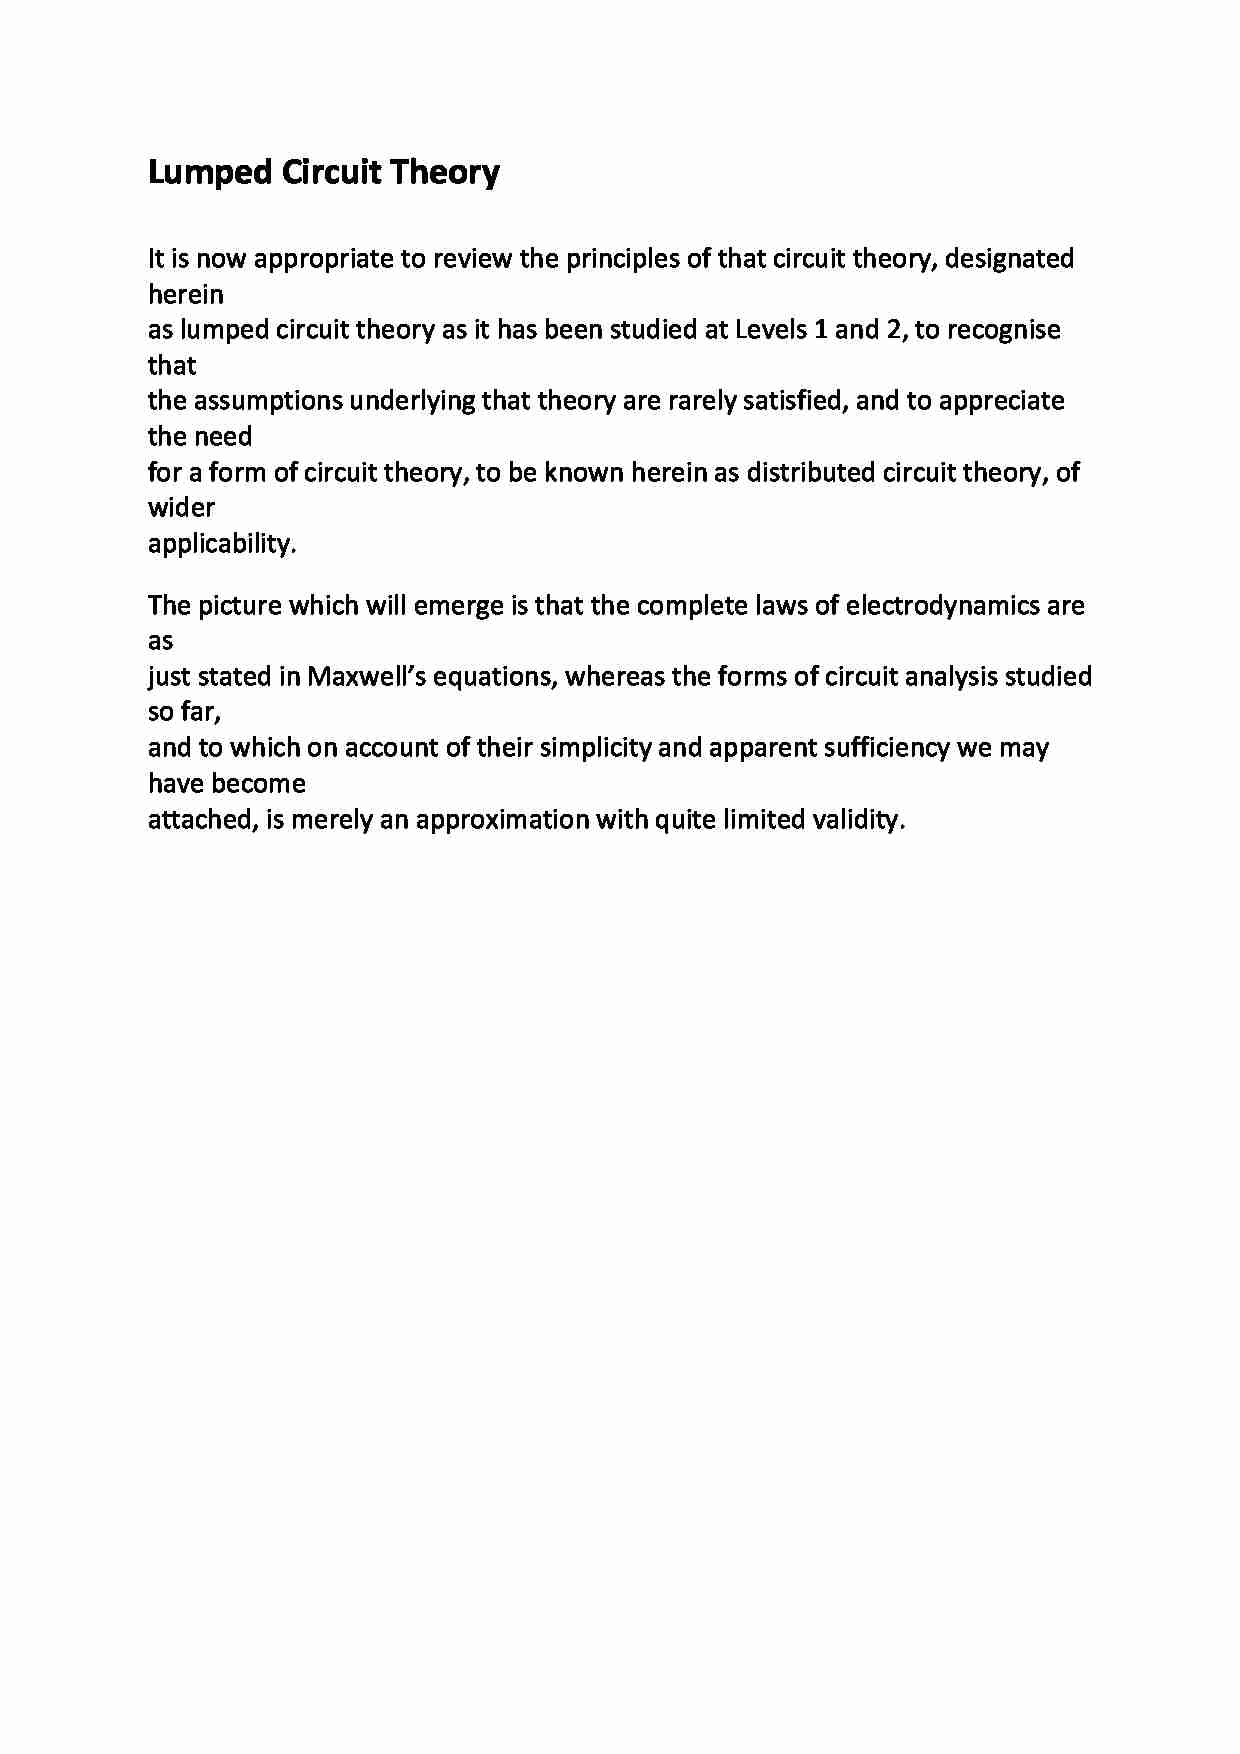 Lumped Circuit Theory - wykład - strona 1